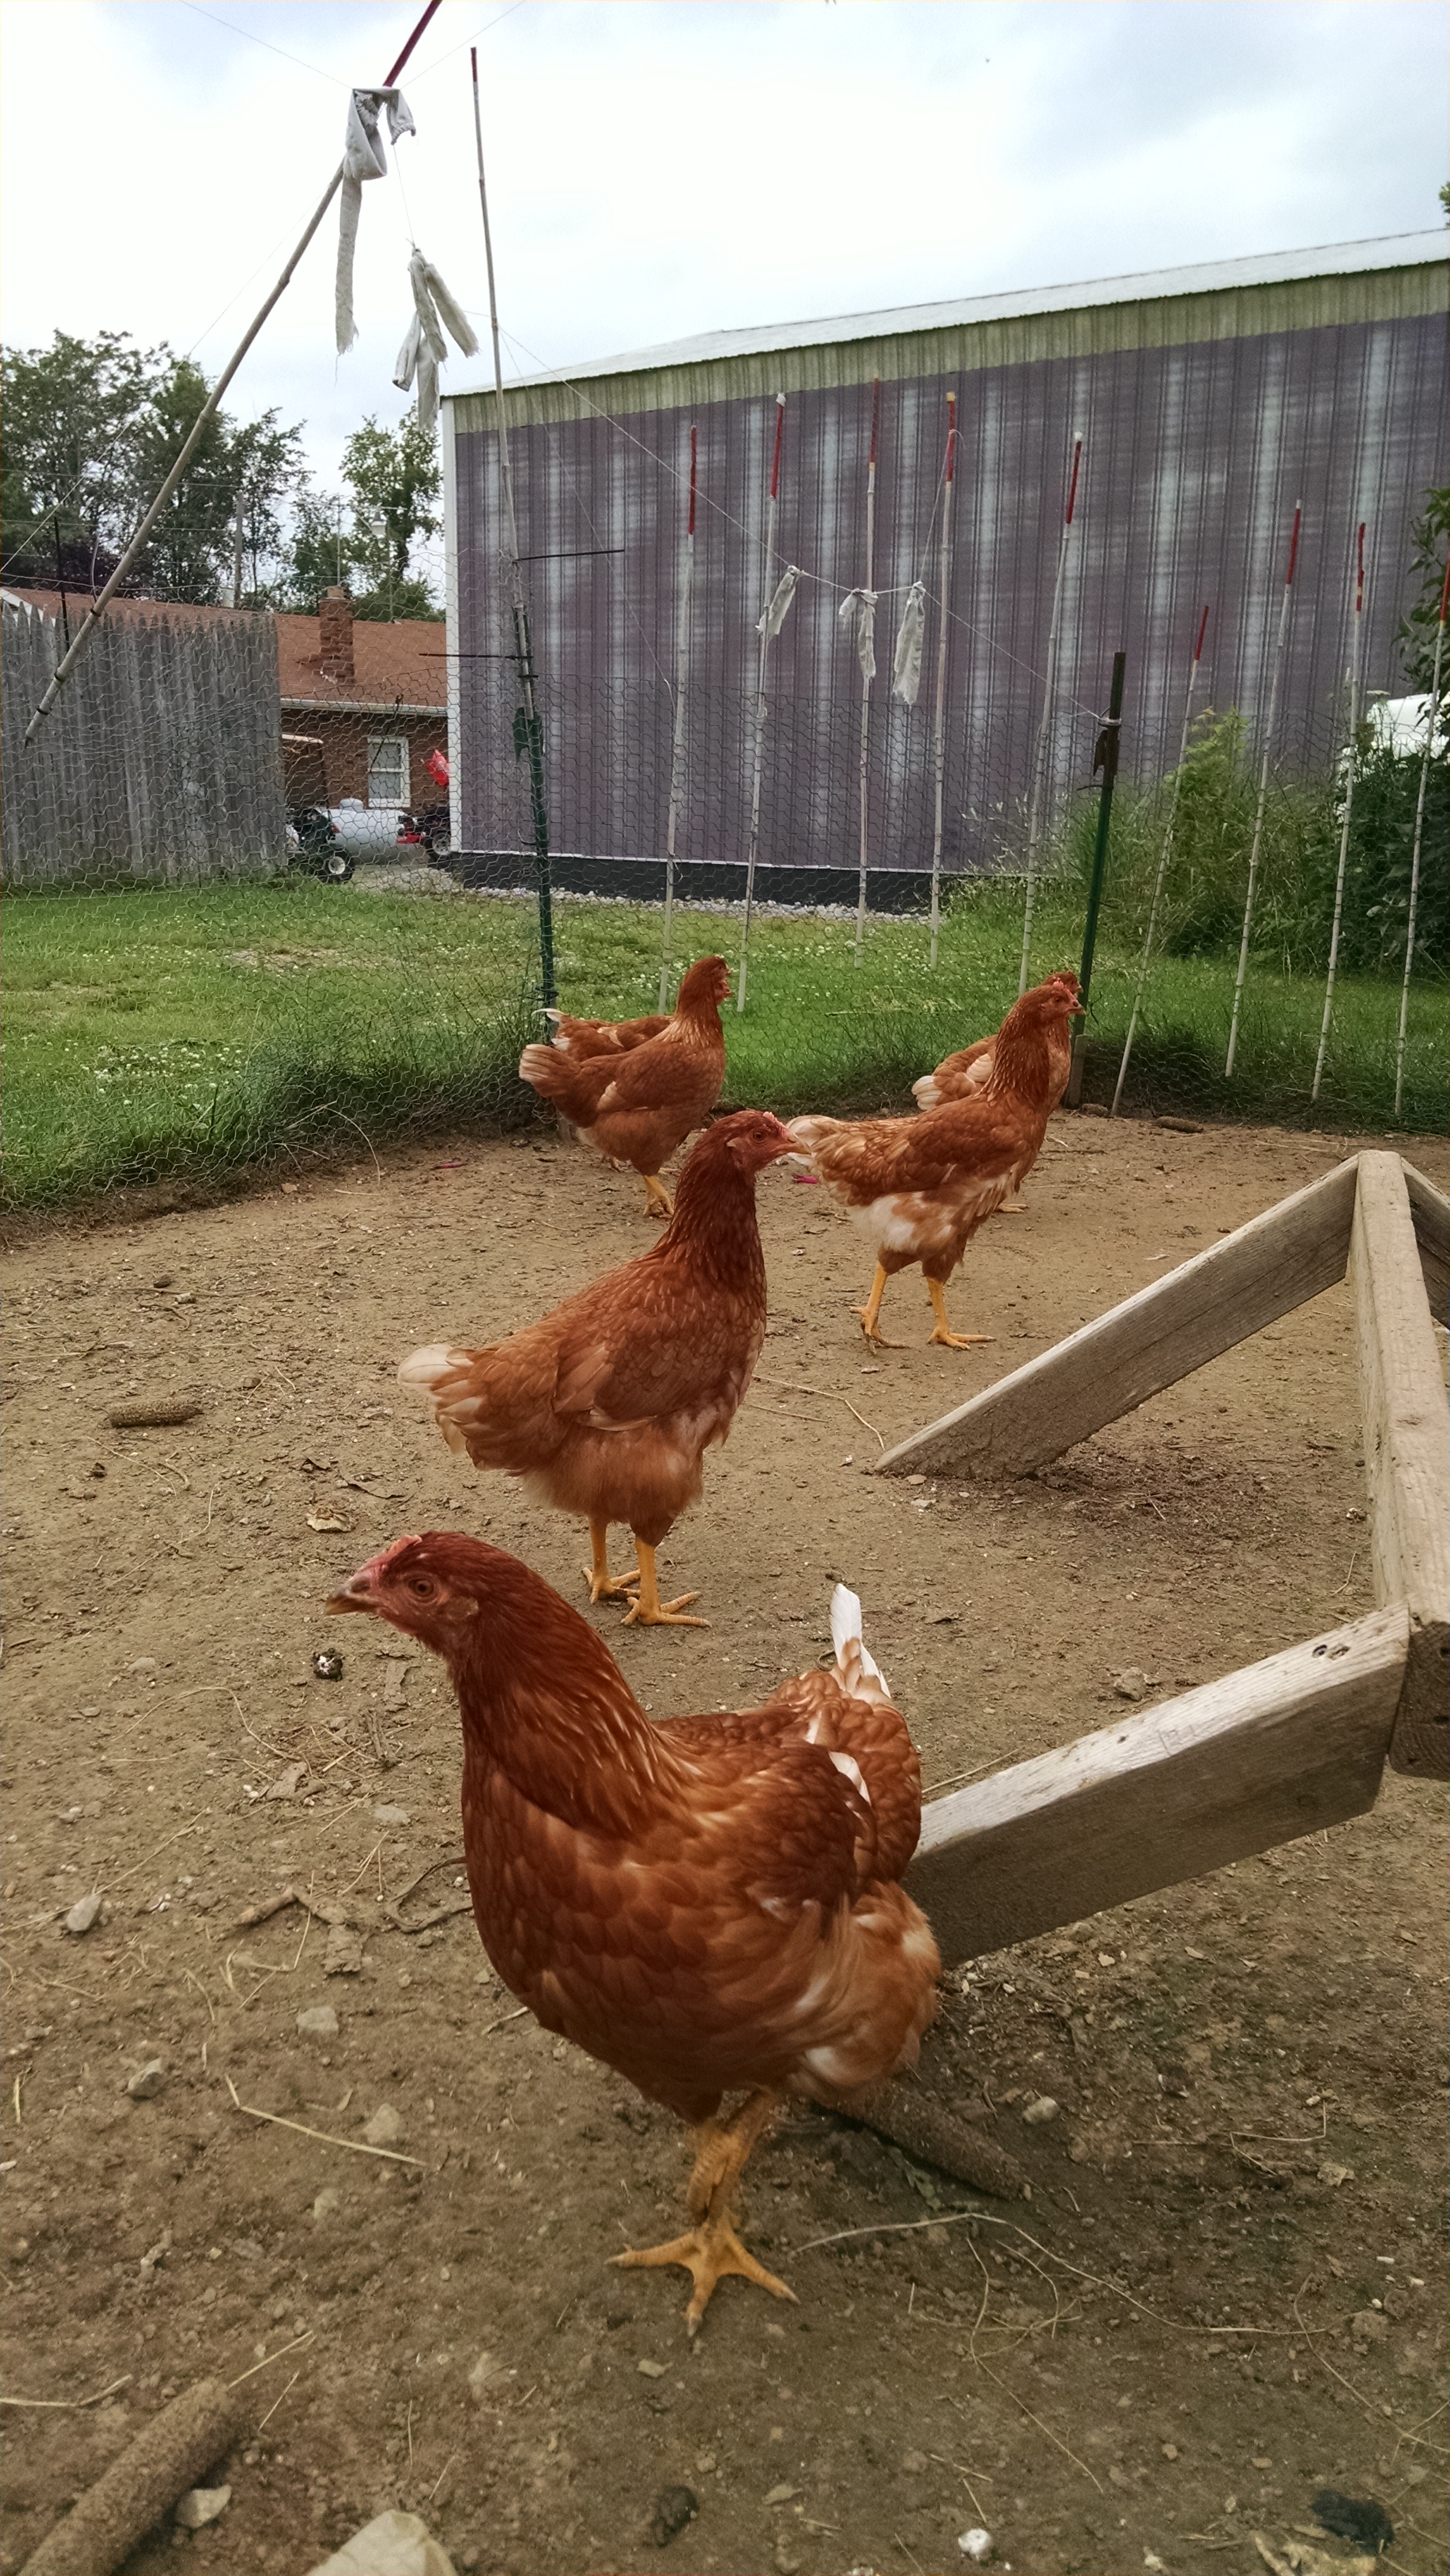 14 week old RIR hens